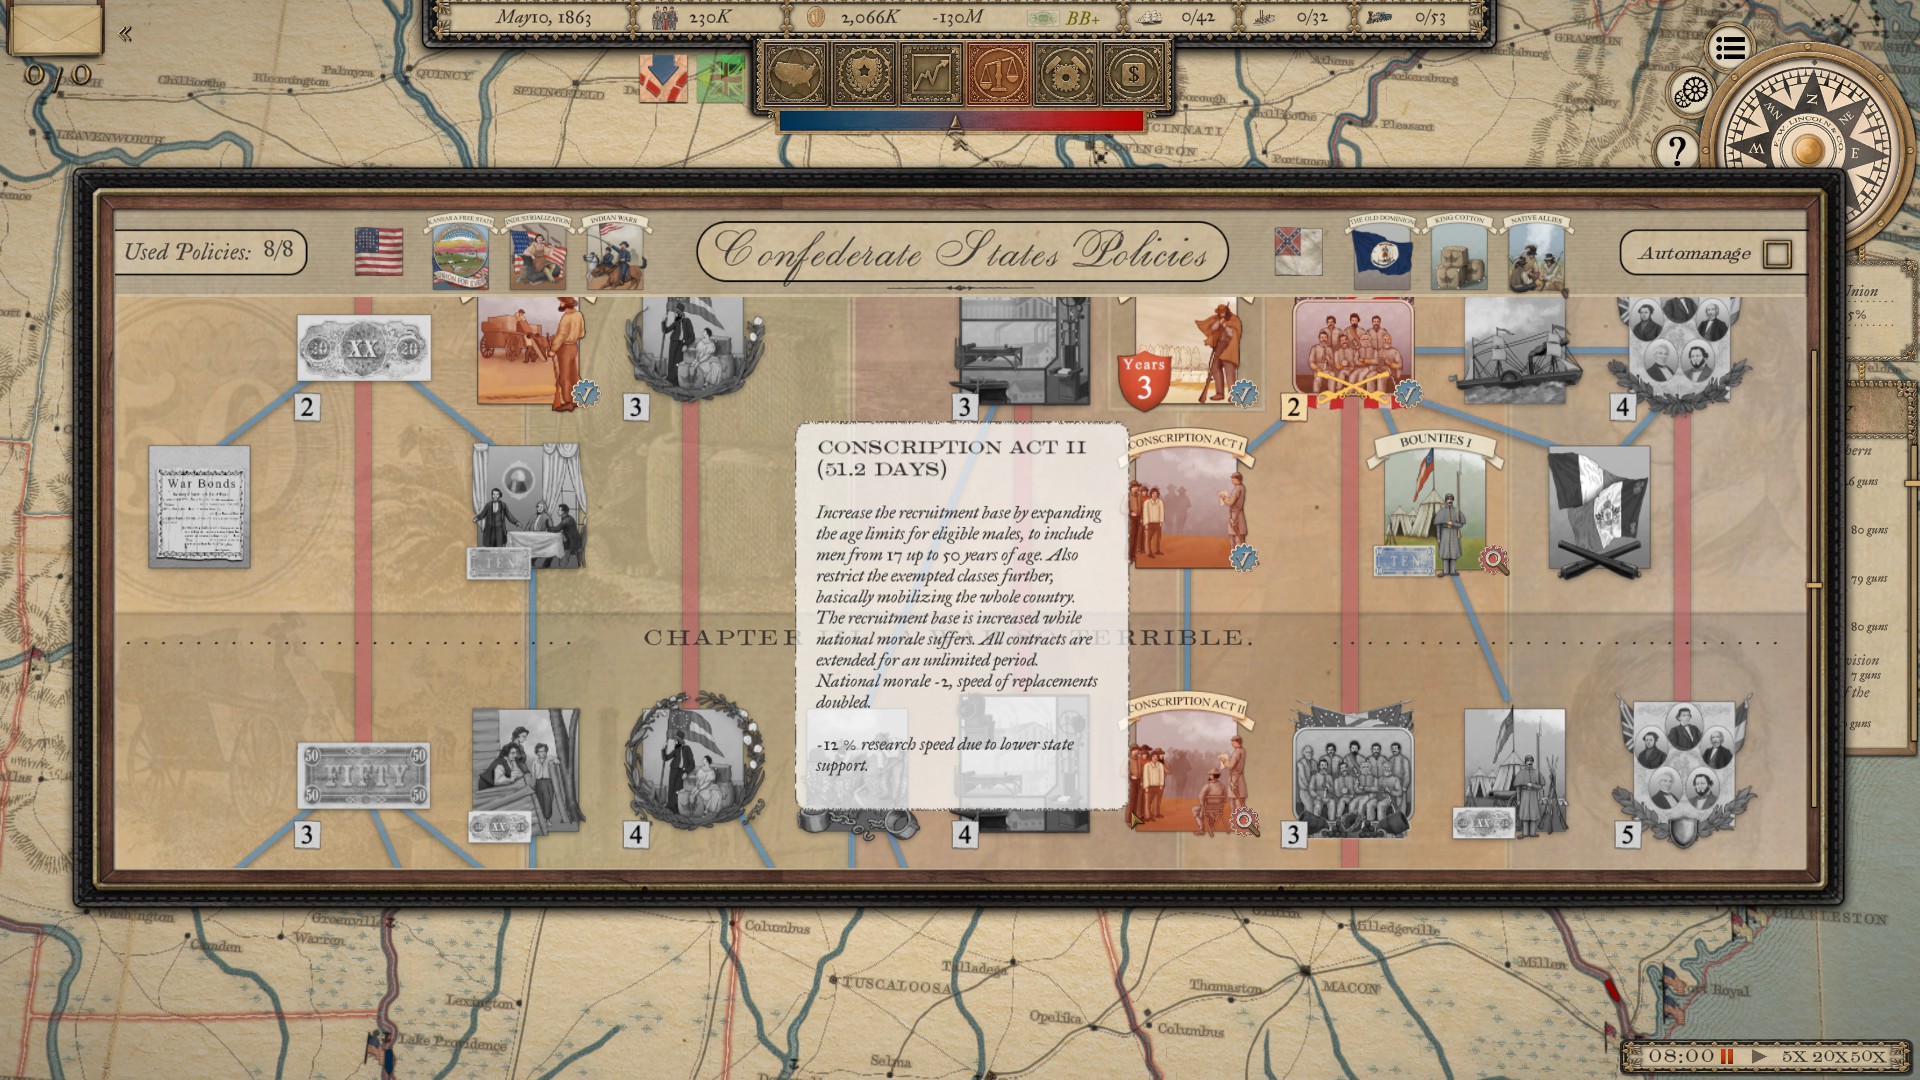 Grand Tactician : The Civil War (1861-1865)